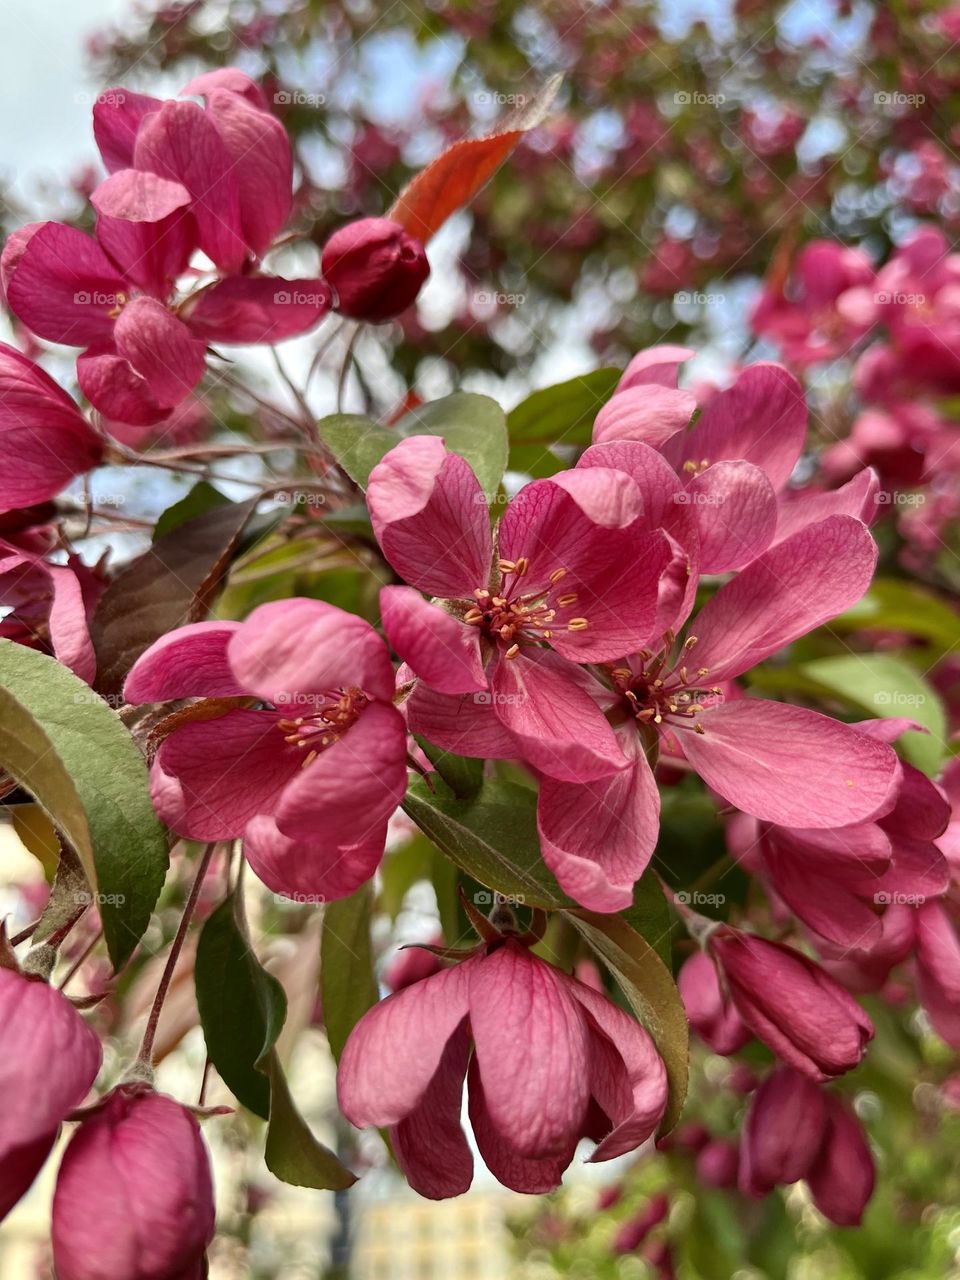 Flowering apple tree in spring